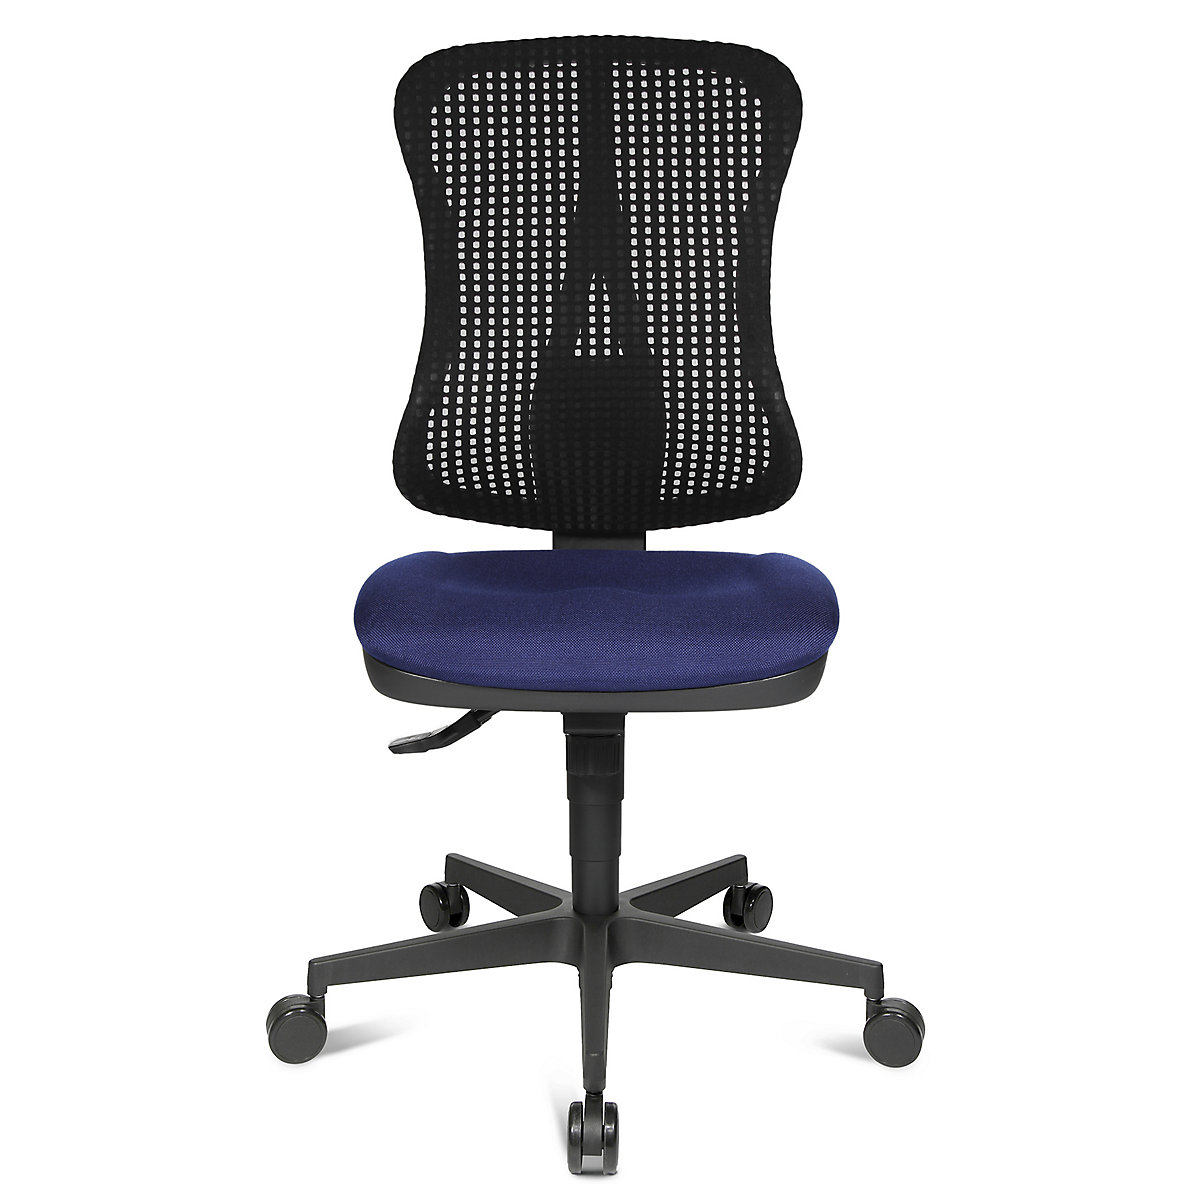 Silla giratoria ergonómica con asiento moldeado – Topstar, sin brazos, asiento azul, retícula del respaldo negra-7